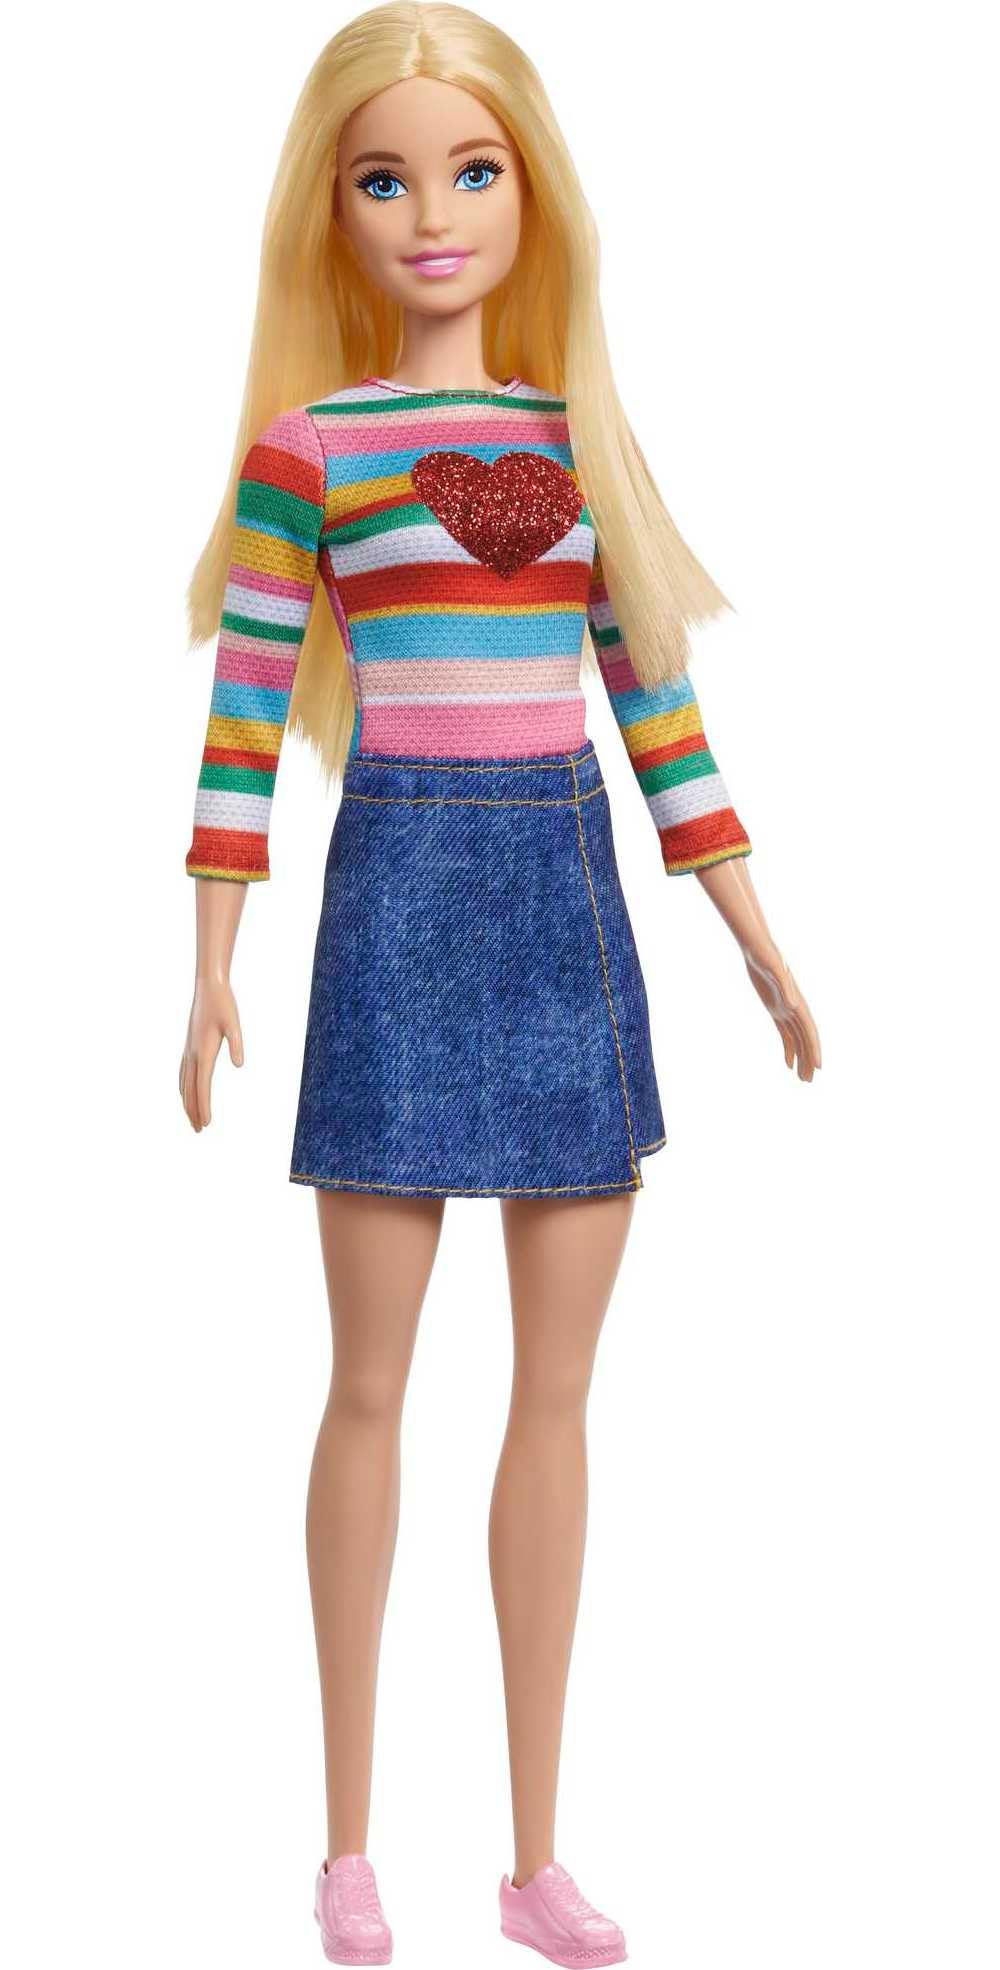 Magnifique Barbie Poupée Barbie « Malibu » Roberts avec